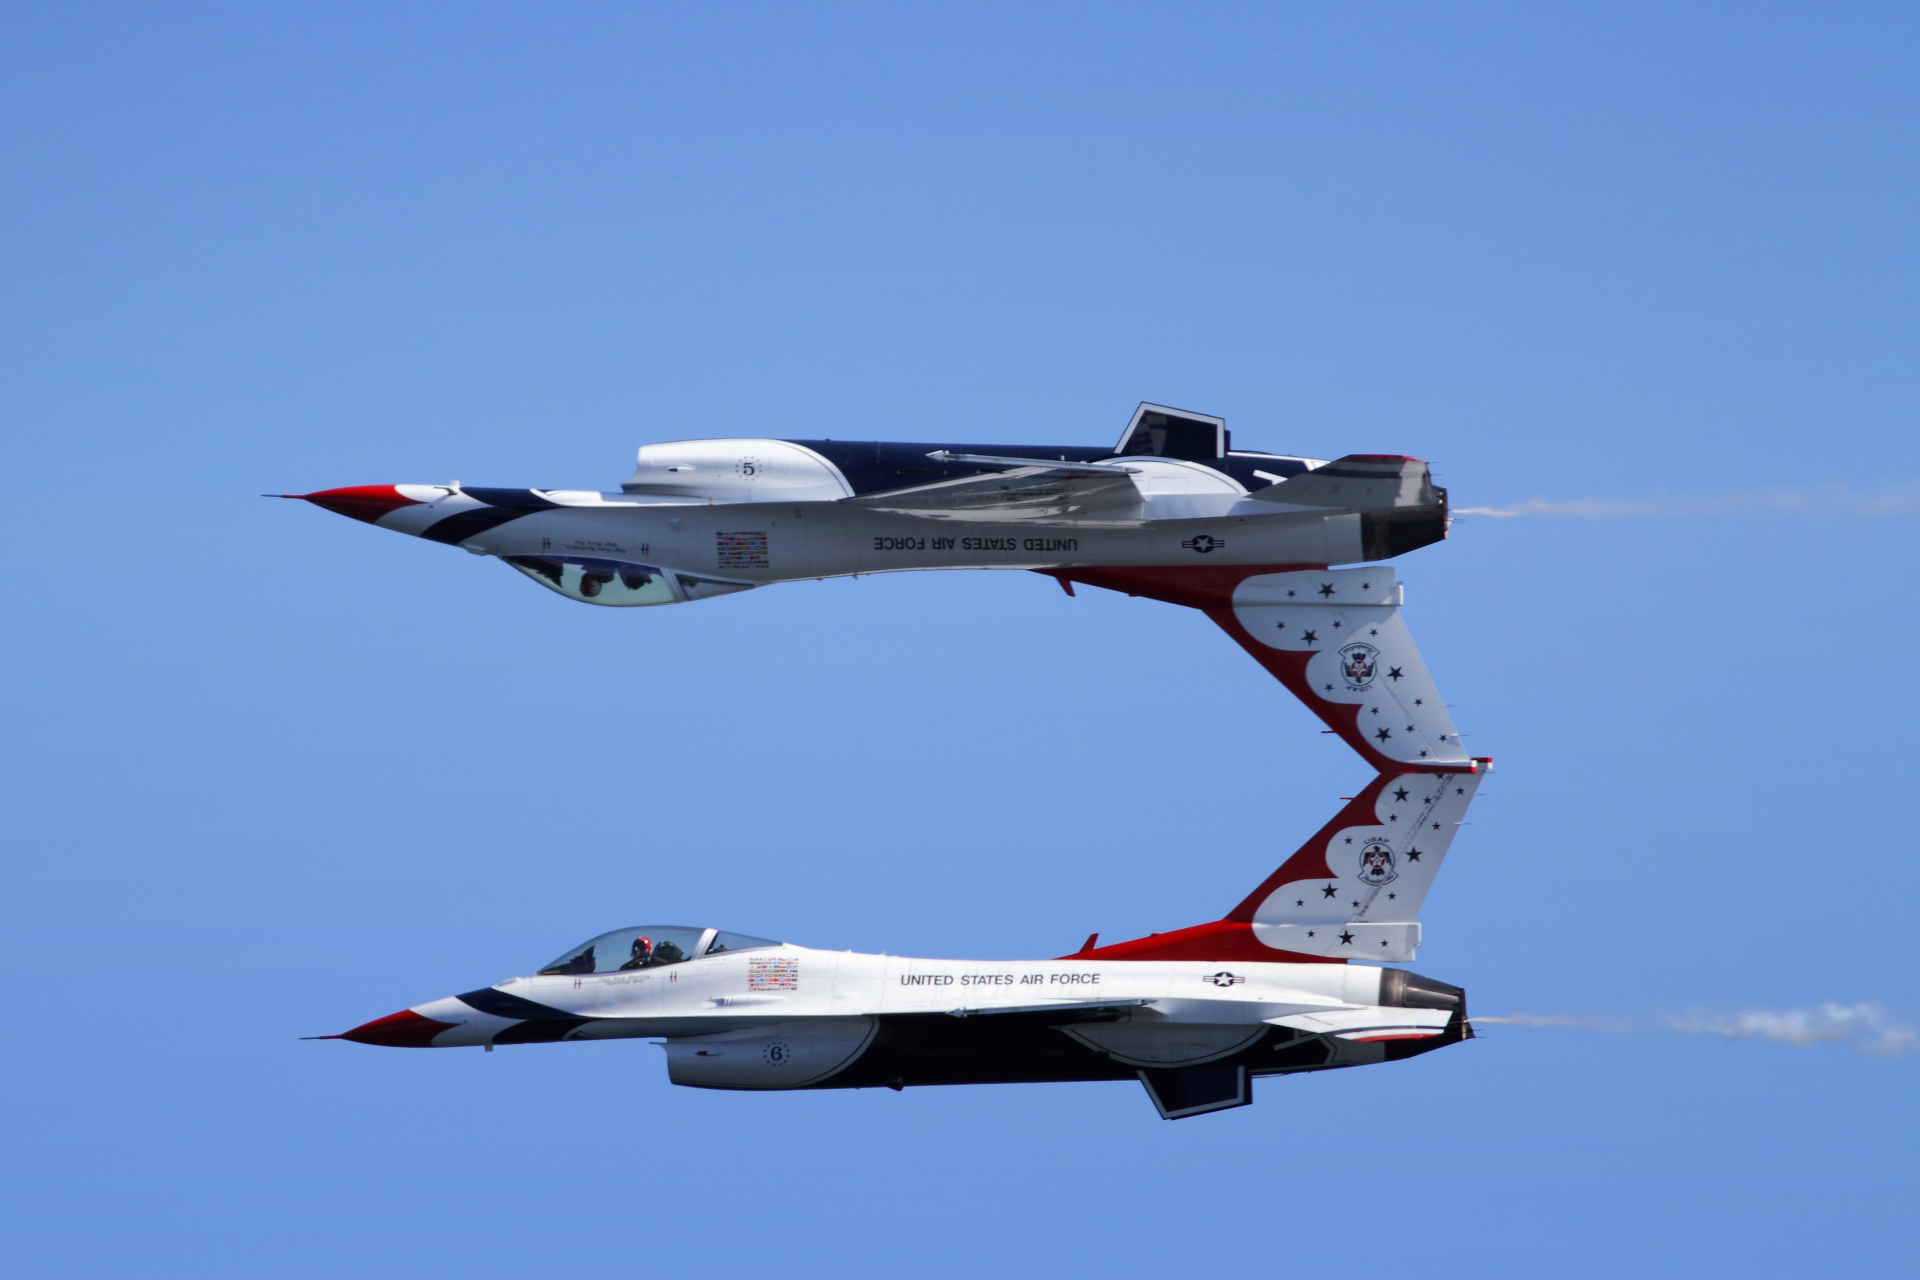 Thunderbirds, aviation photograpy